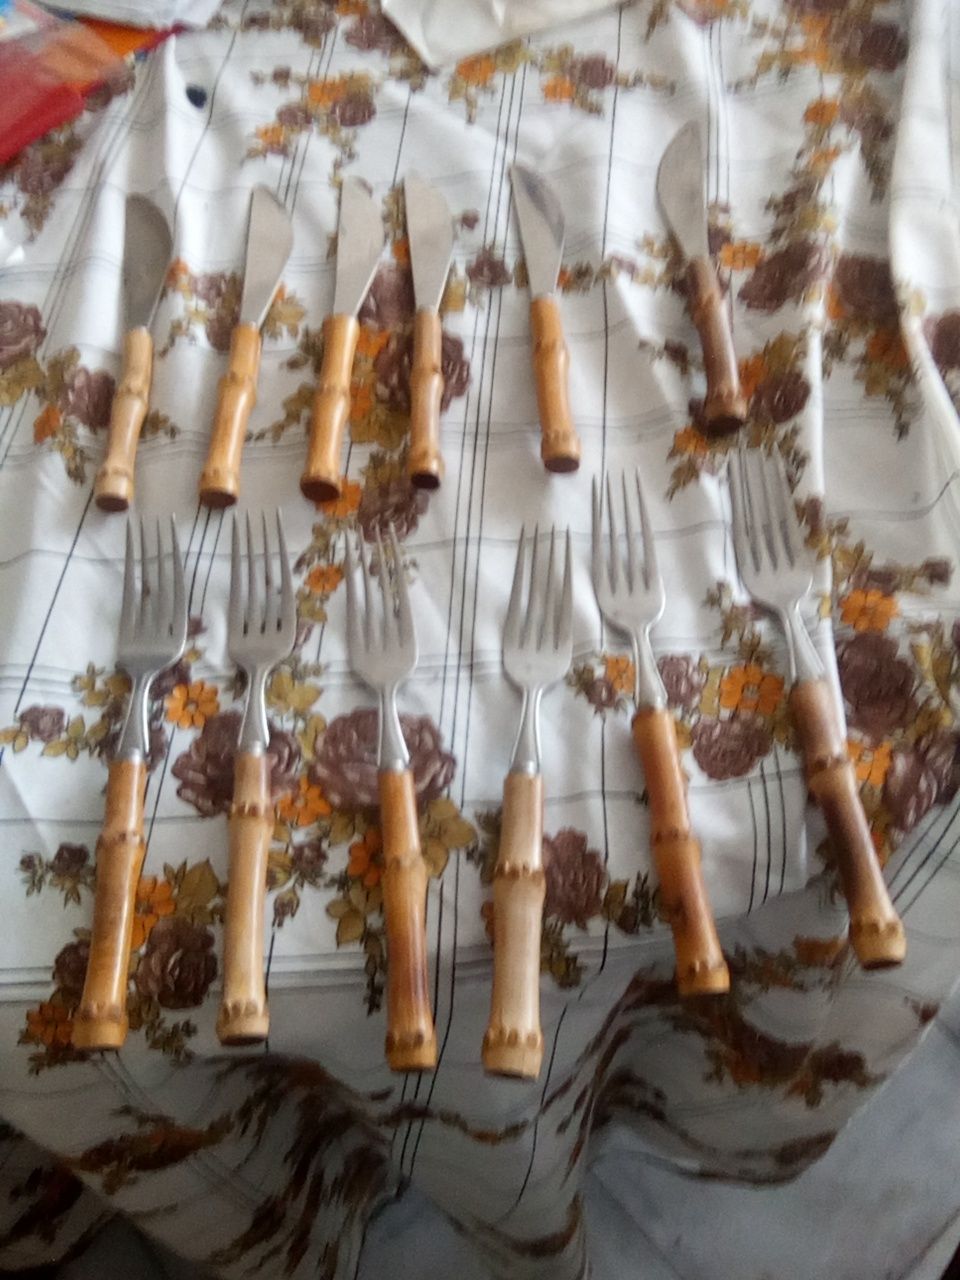 Conjunto seis garfos e seis sacos com cabo de cana da india